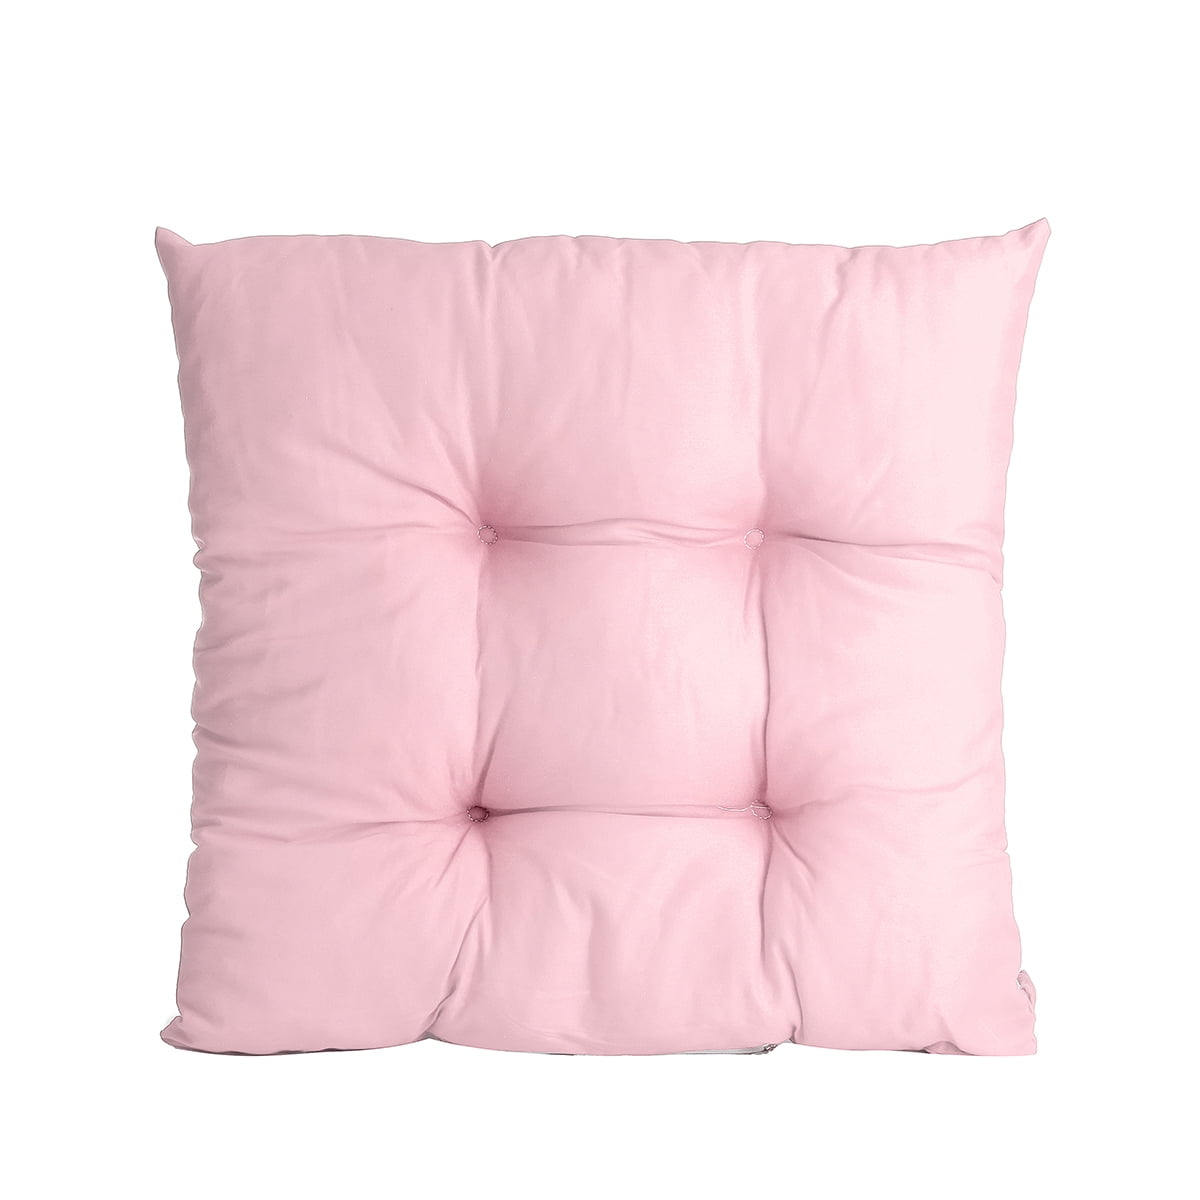 pink waterproof cushions